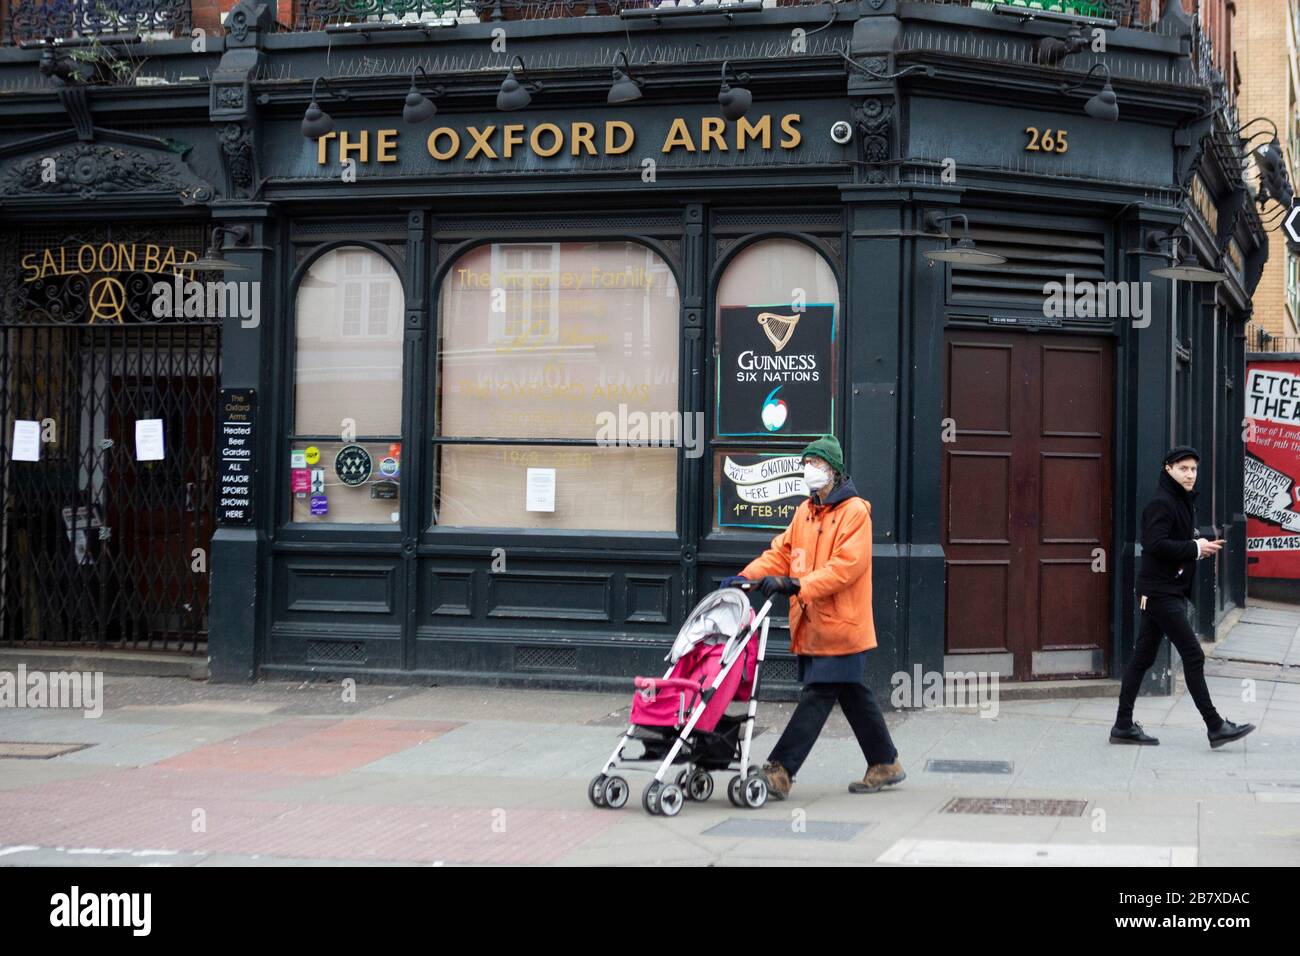 Camden Pub Closure London due to Coronavirus Stock Photo